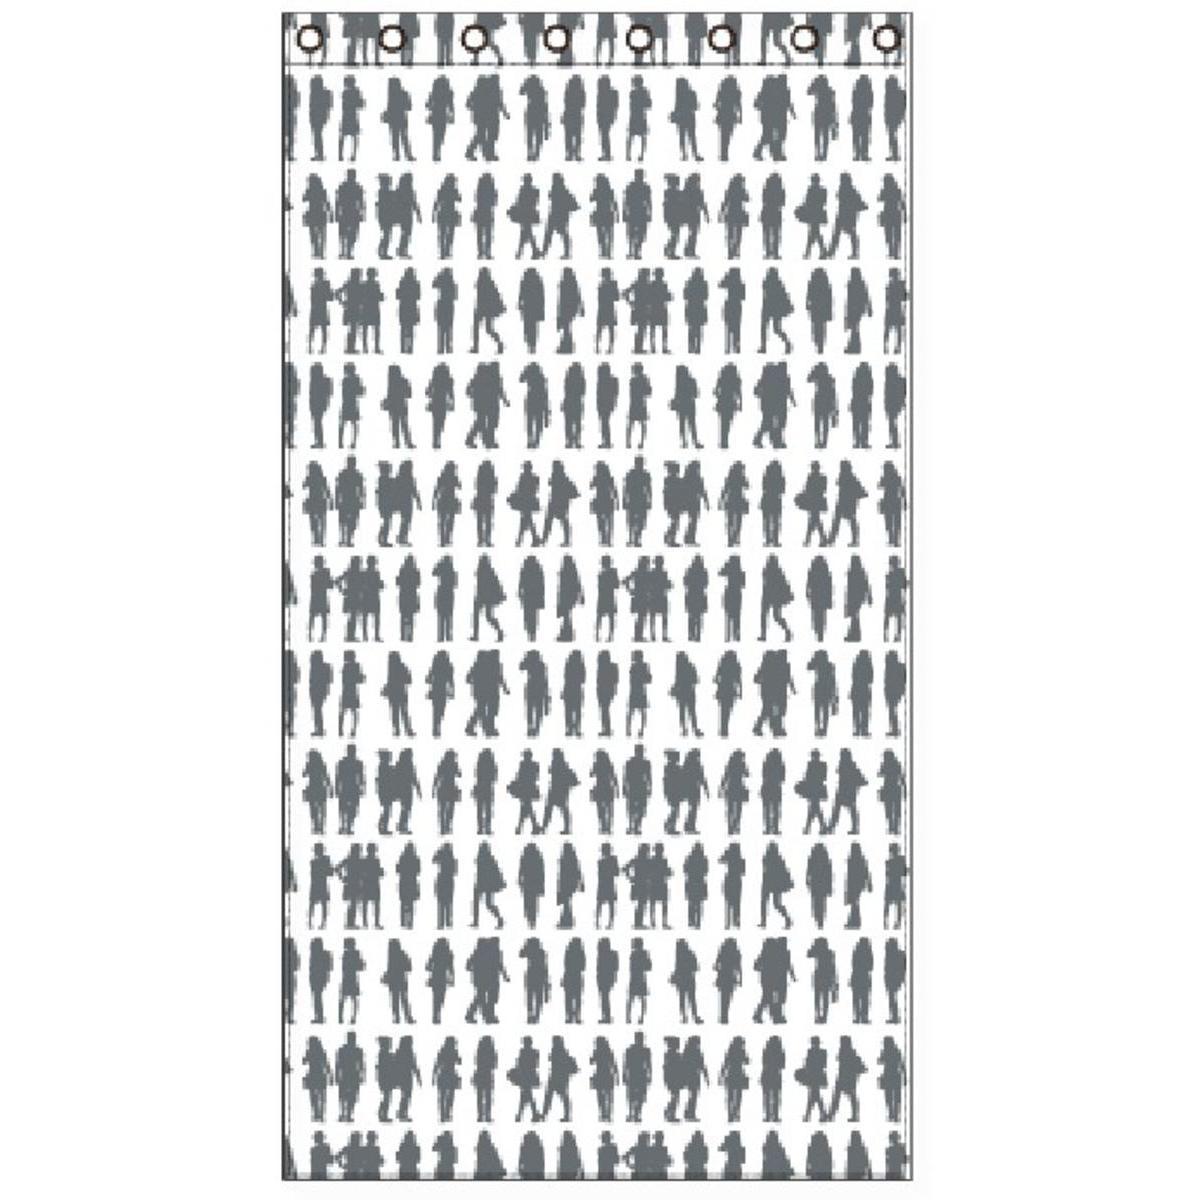 Voilage people - Polyester - 140 x 240 cm - Noir et blanc